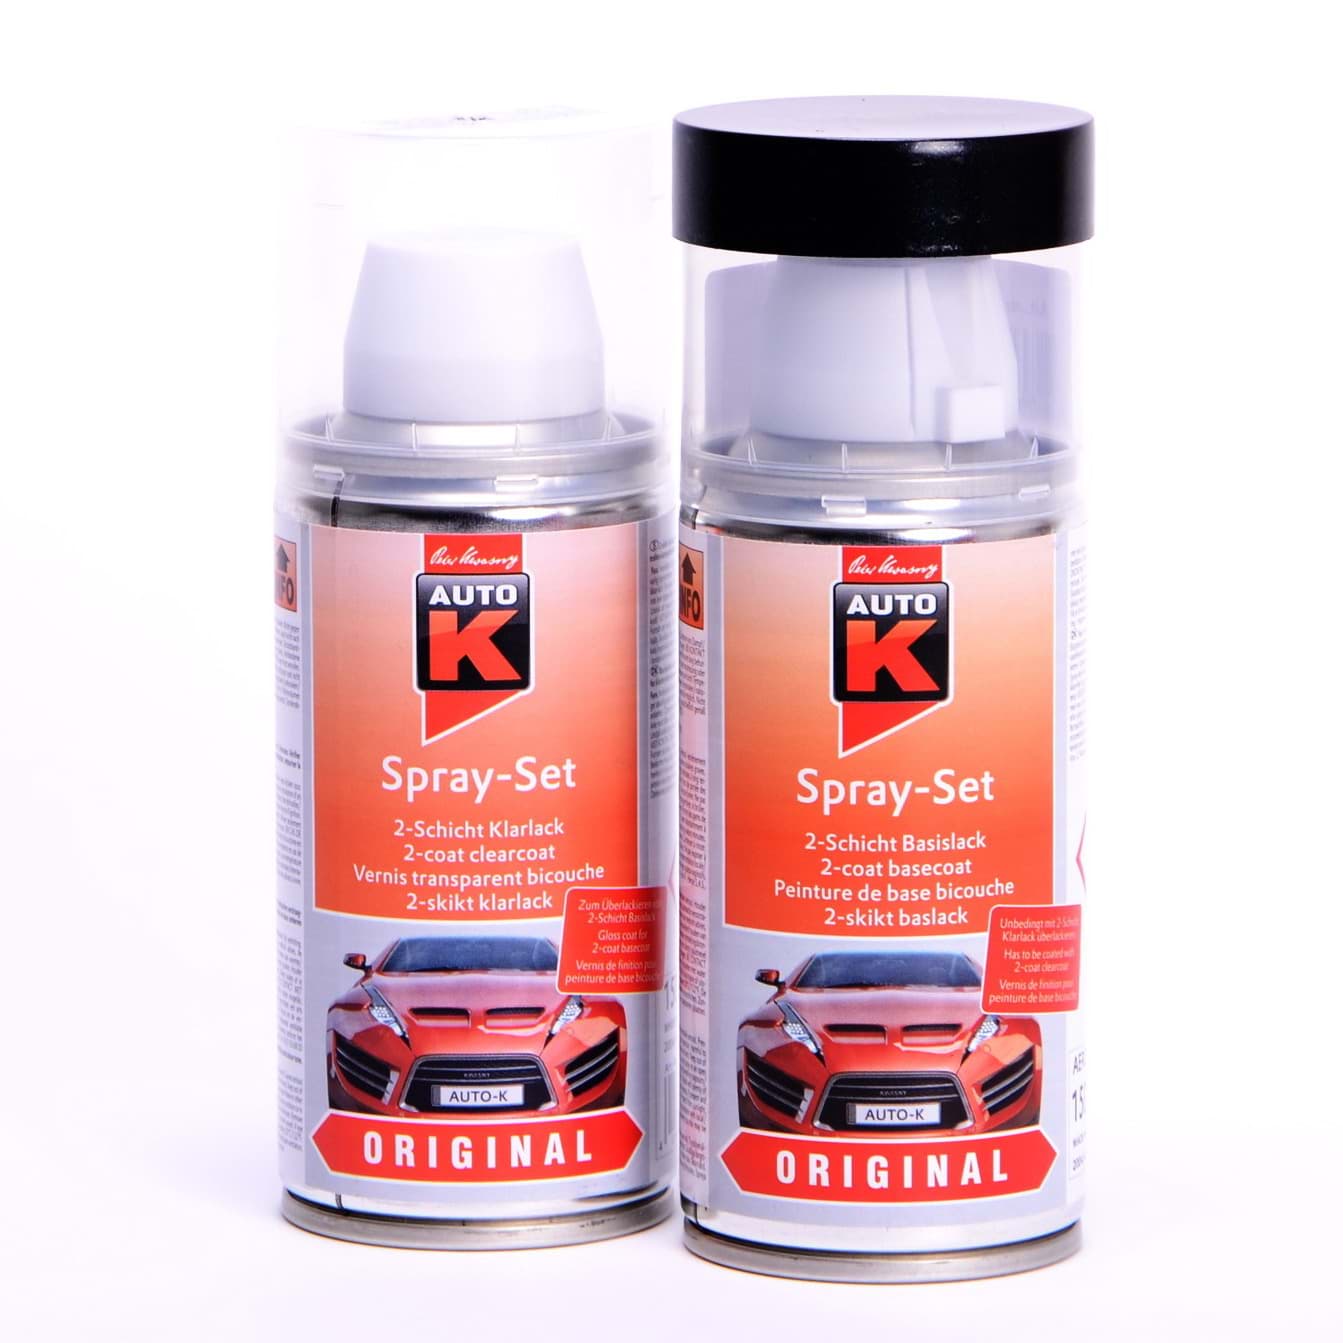 Afbeelding van Auto-K Spray-Set Autolack für Volkswagen, VW, Audi LY7M Alusilber met 20799